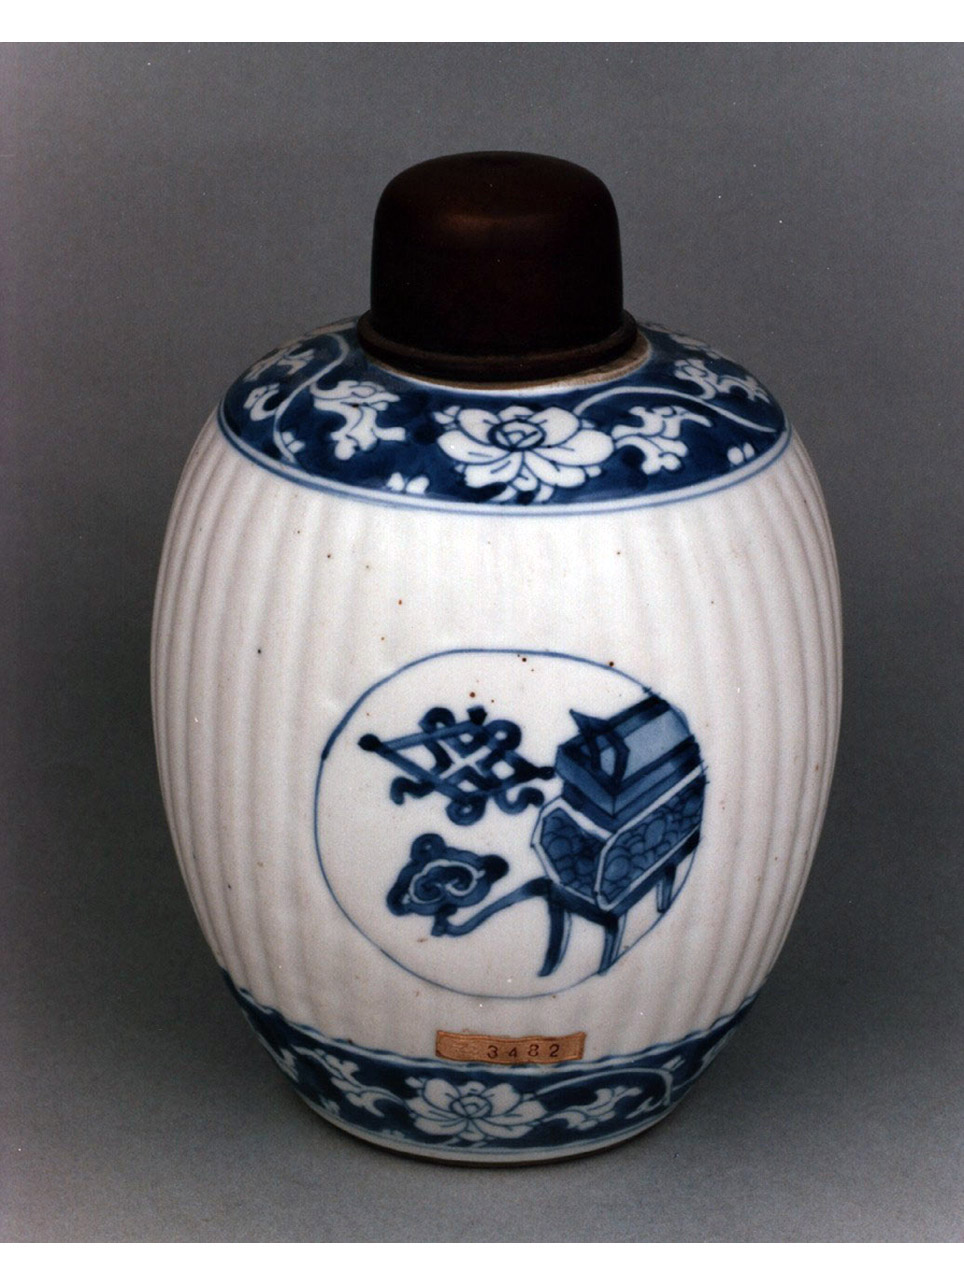 cento antichità entro medaglioni/ motivi decorativi floreali (vasetto) - manifattura cinese, produzione europea (secc. XVII/ XVIII)